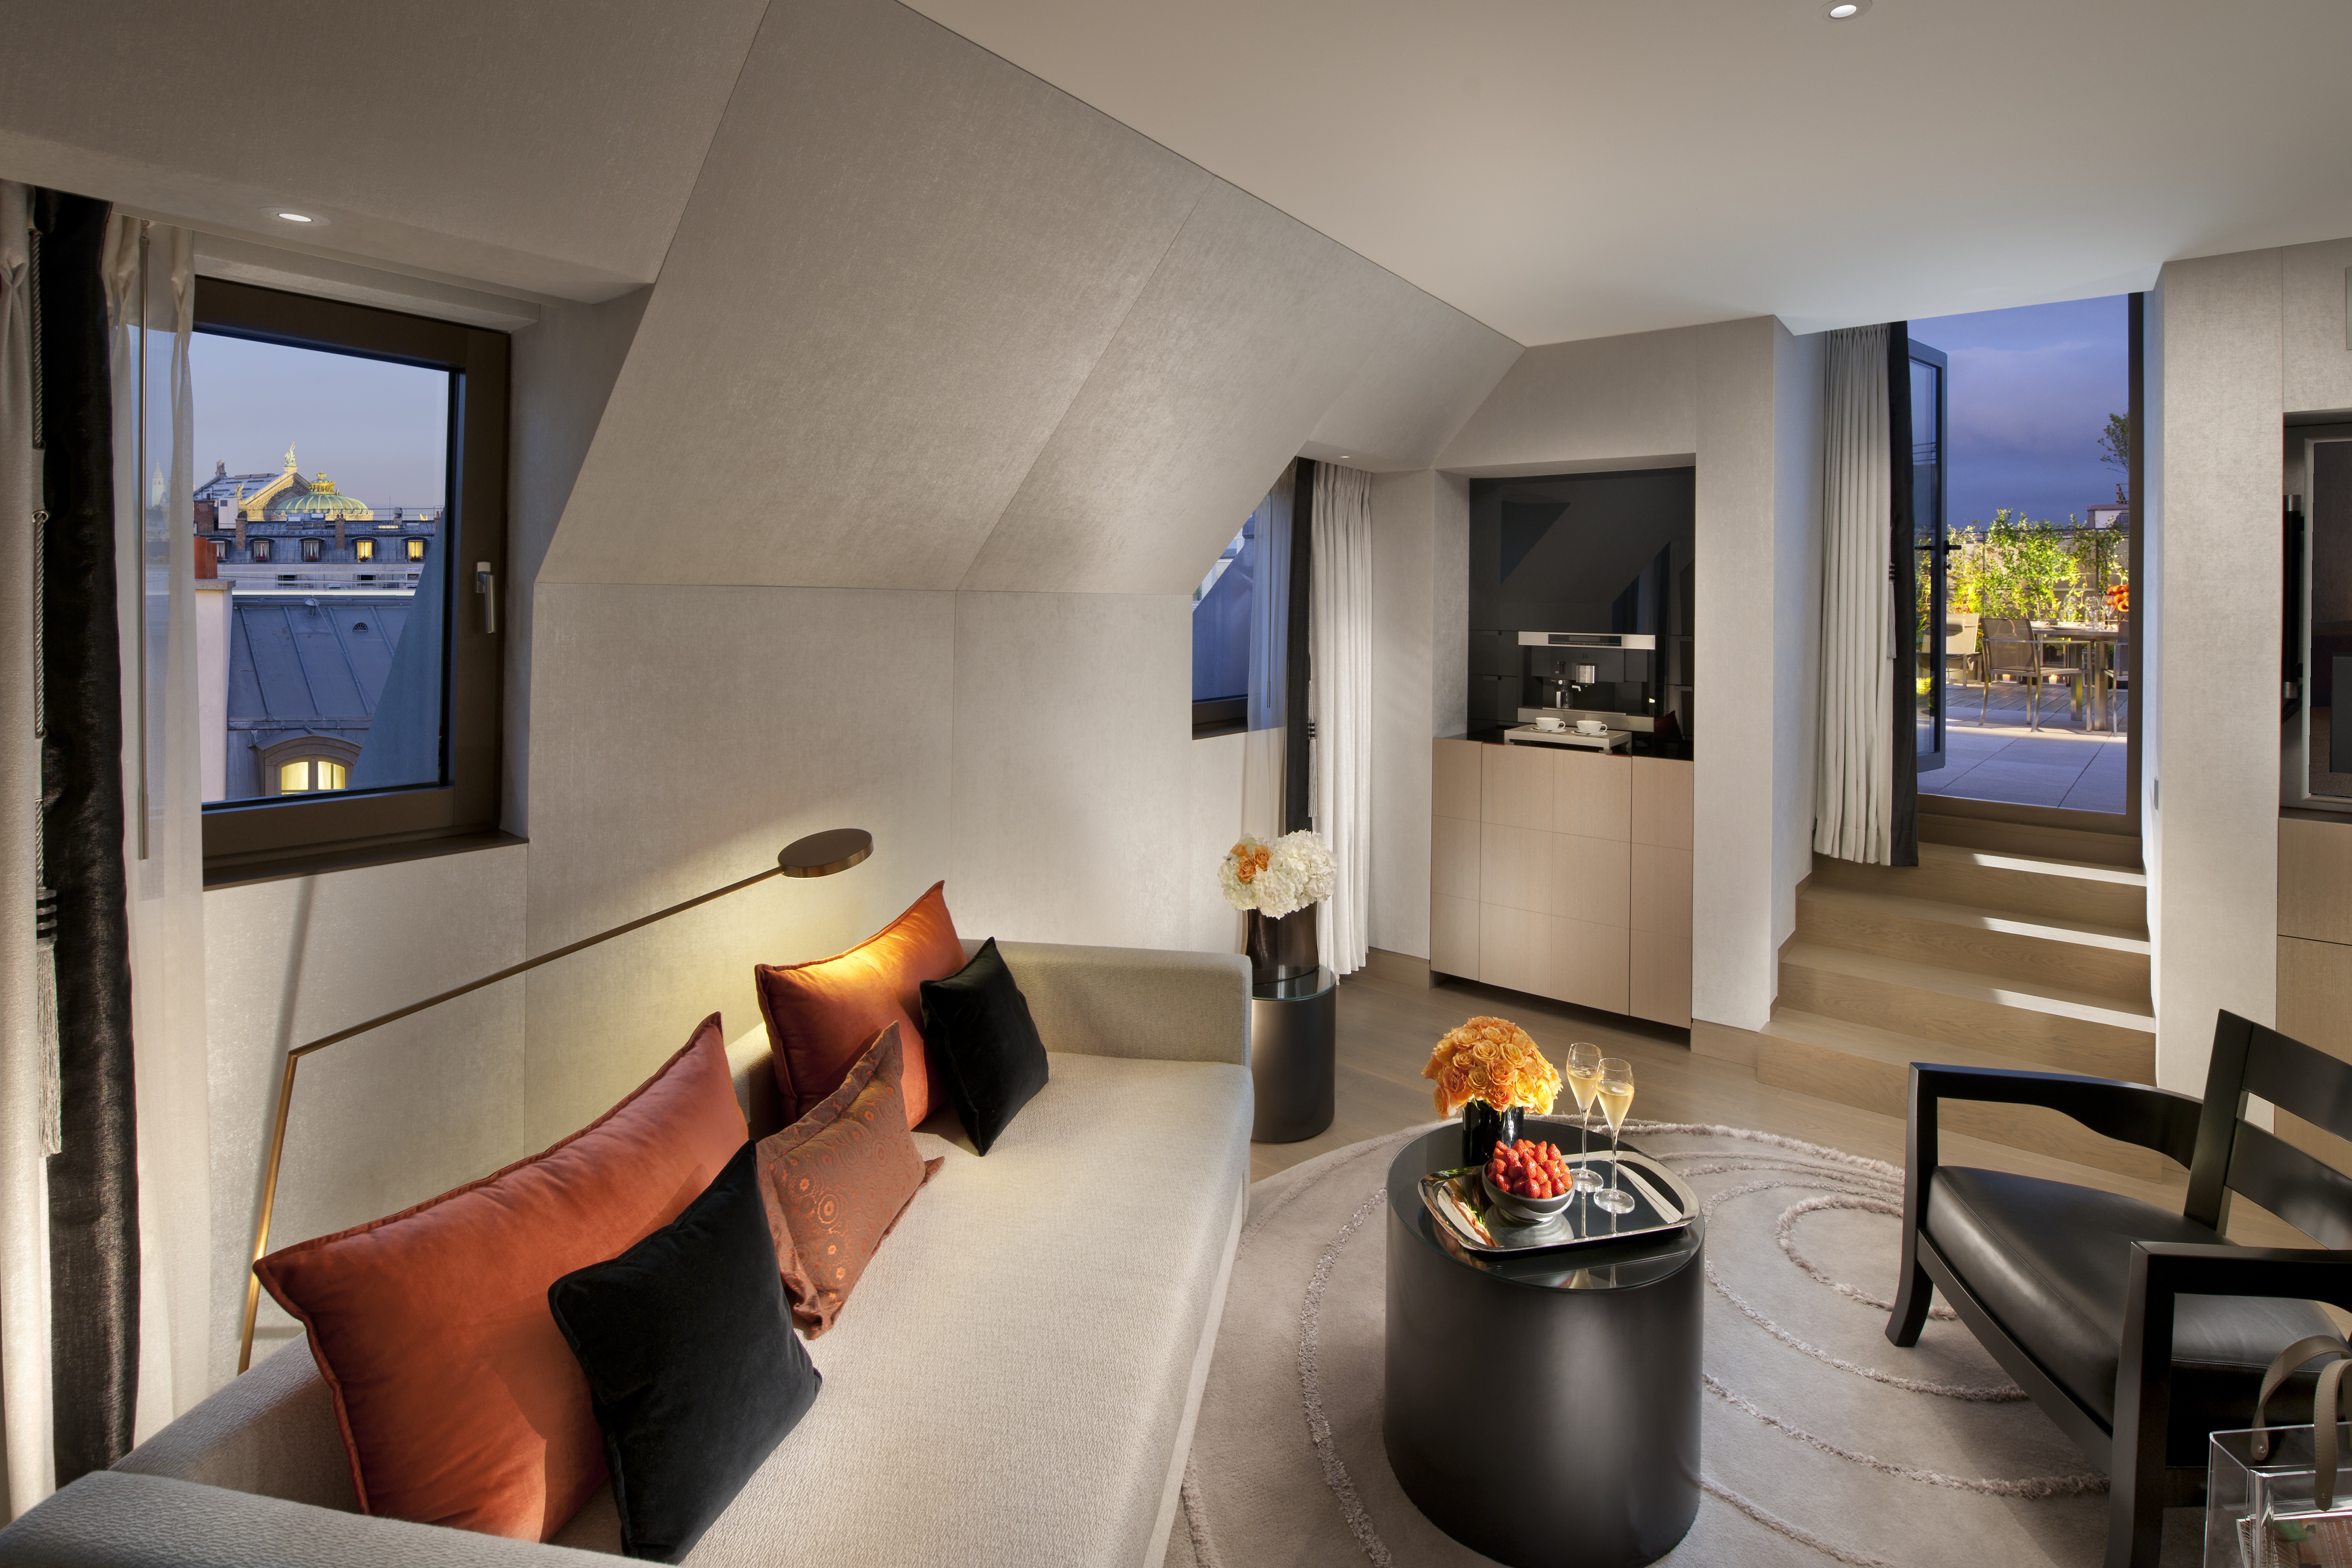 Hotel room Duplex Suite , Four Seasons Hotel George V Paris, Paris